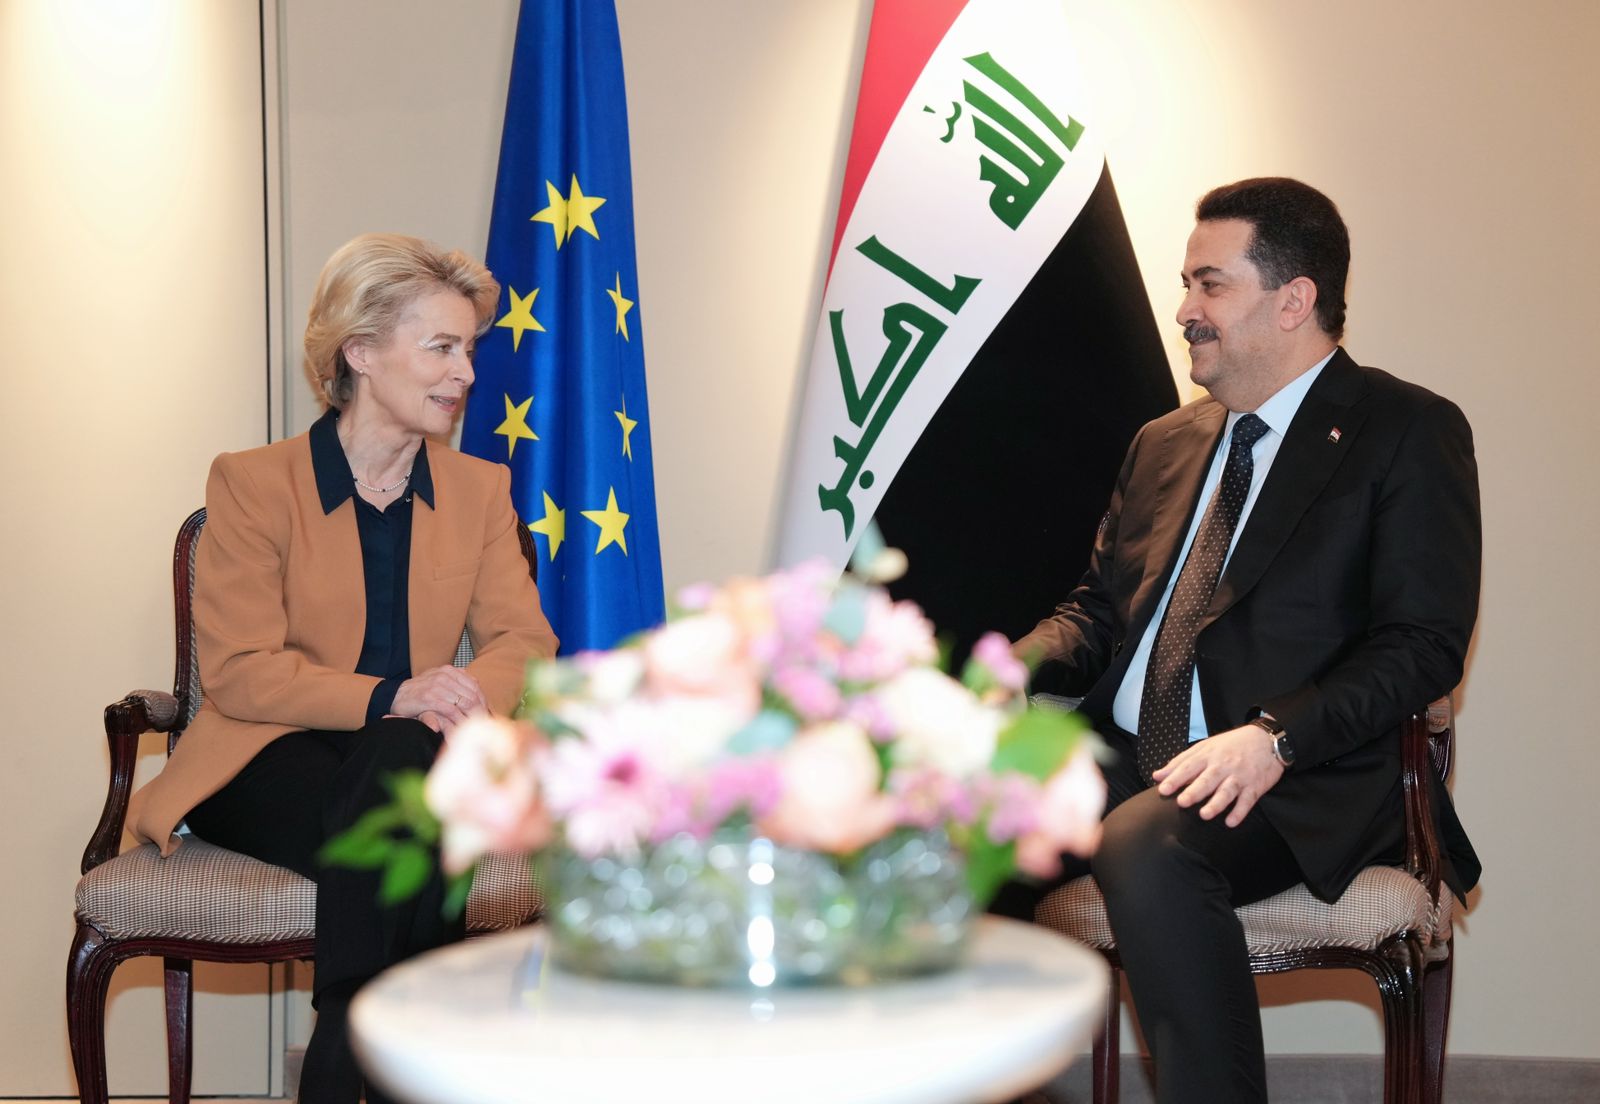 فوندرالين:الدول الأوروبية تسعى إلى شراكات حقيقية مع العراق في مجال الطاقة